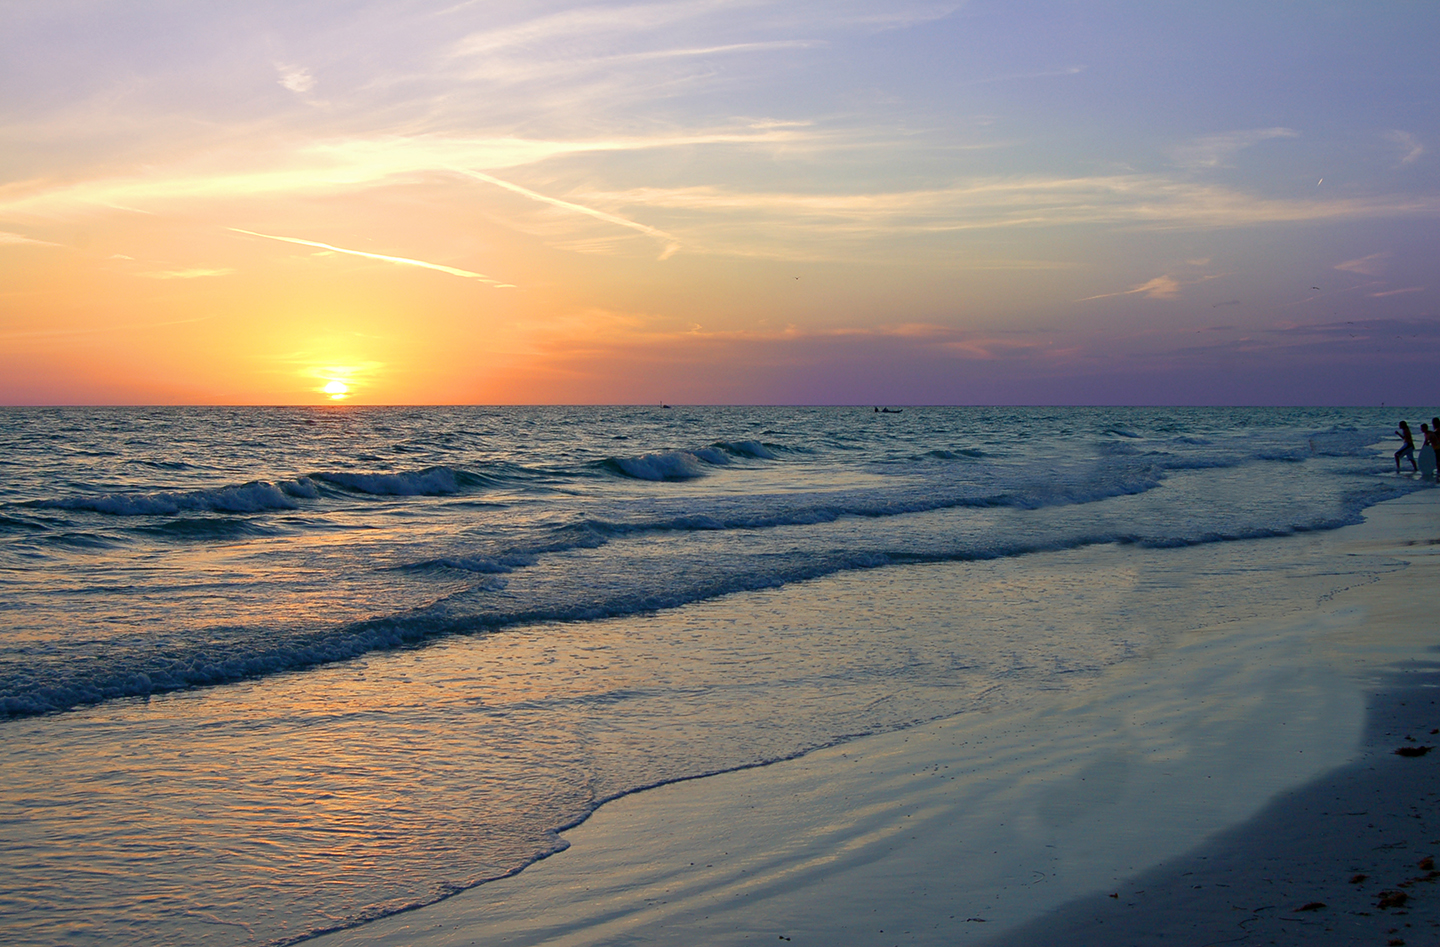 Bãi biển Siesta là một trong các bãi biển đẹp nhất ở Florida